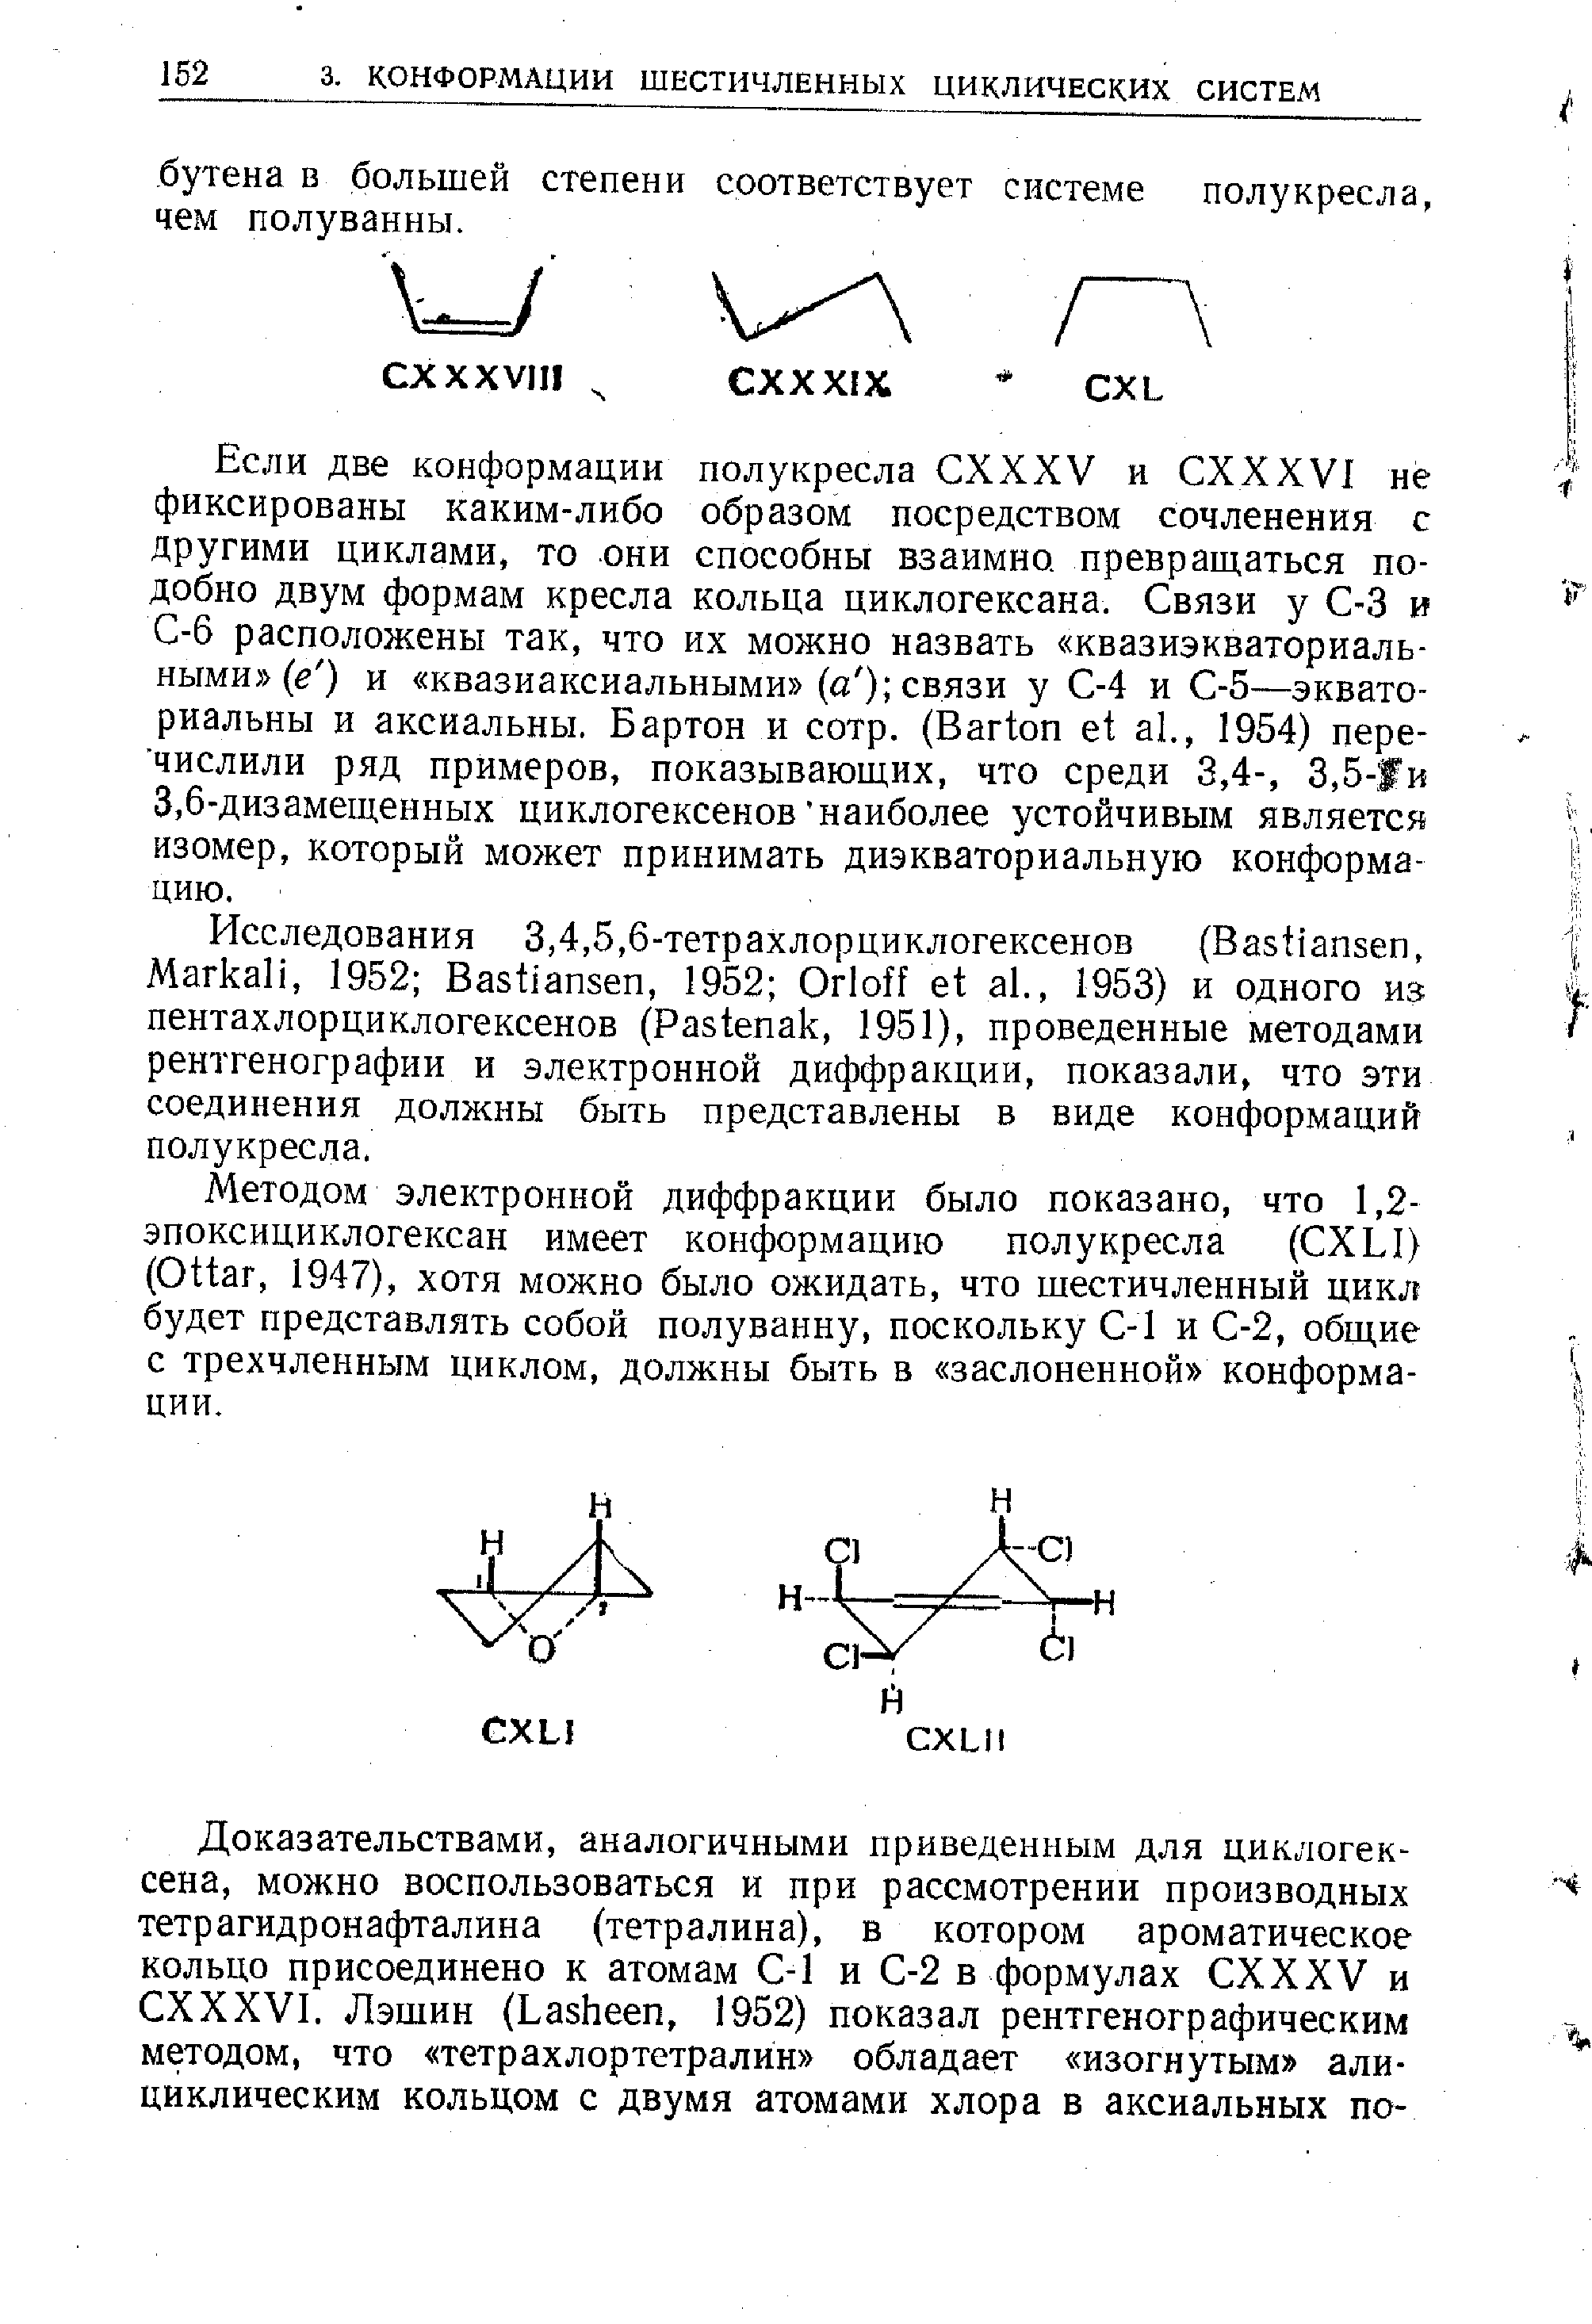 Методом электронной диффракции было показано, что 1,2-эпоксициклогексан имеет конформацию полукресла ( XLI) (Ottar, 1947), хотя можно было ожидать, что щестичленный цикл будет представлять собой полуванну, поскольку С-1 и С-2, общие с трехчленным циклом, должны быть в заслоненной конформации.